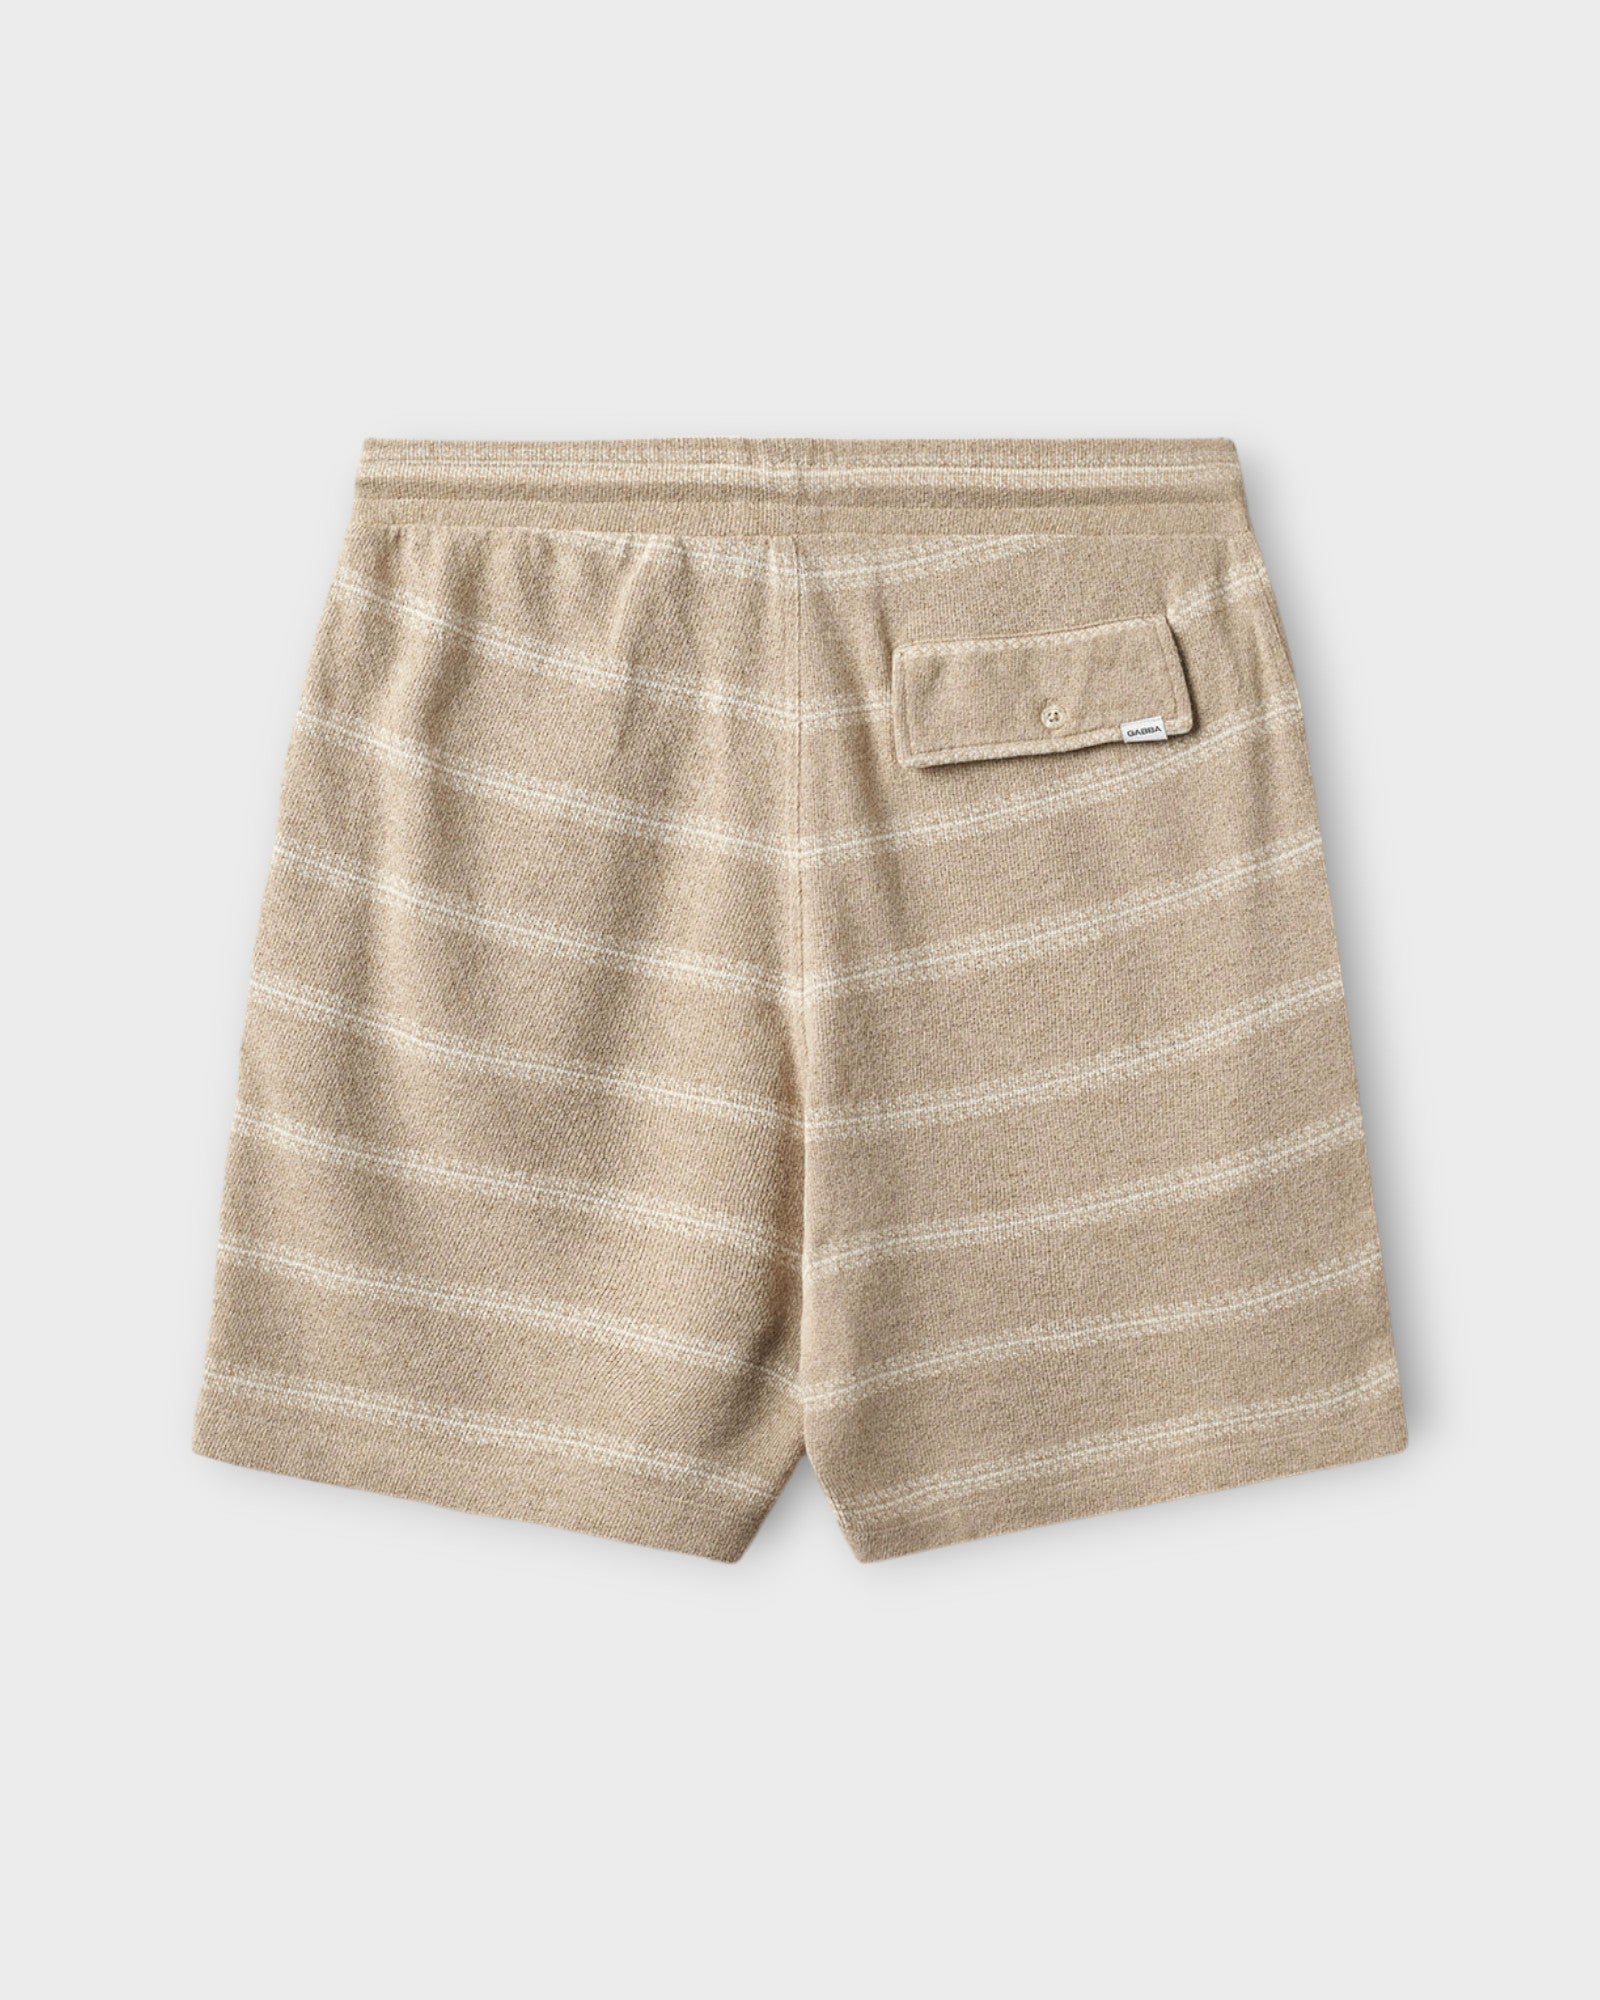 Fede Win Shorts Safari fra Gabba. Sandfarvet shorts med elastik i livet til mænd. Her set bagfra.